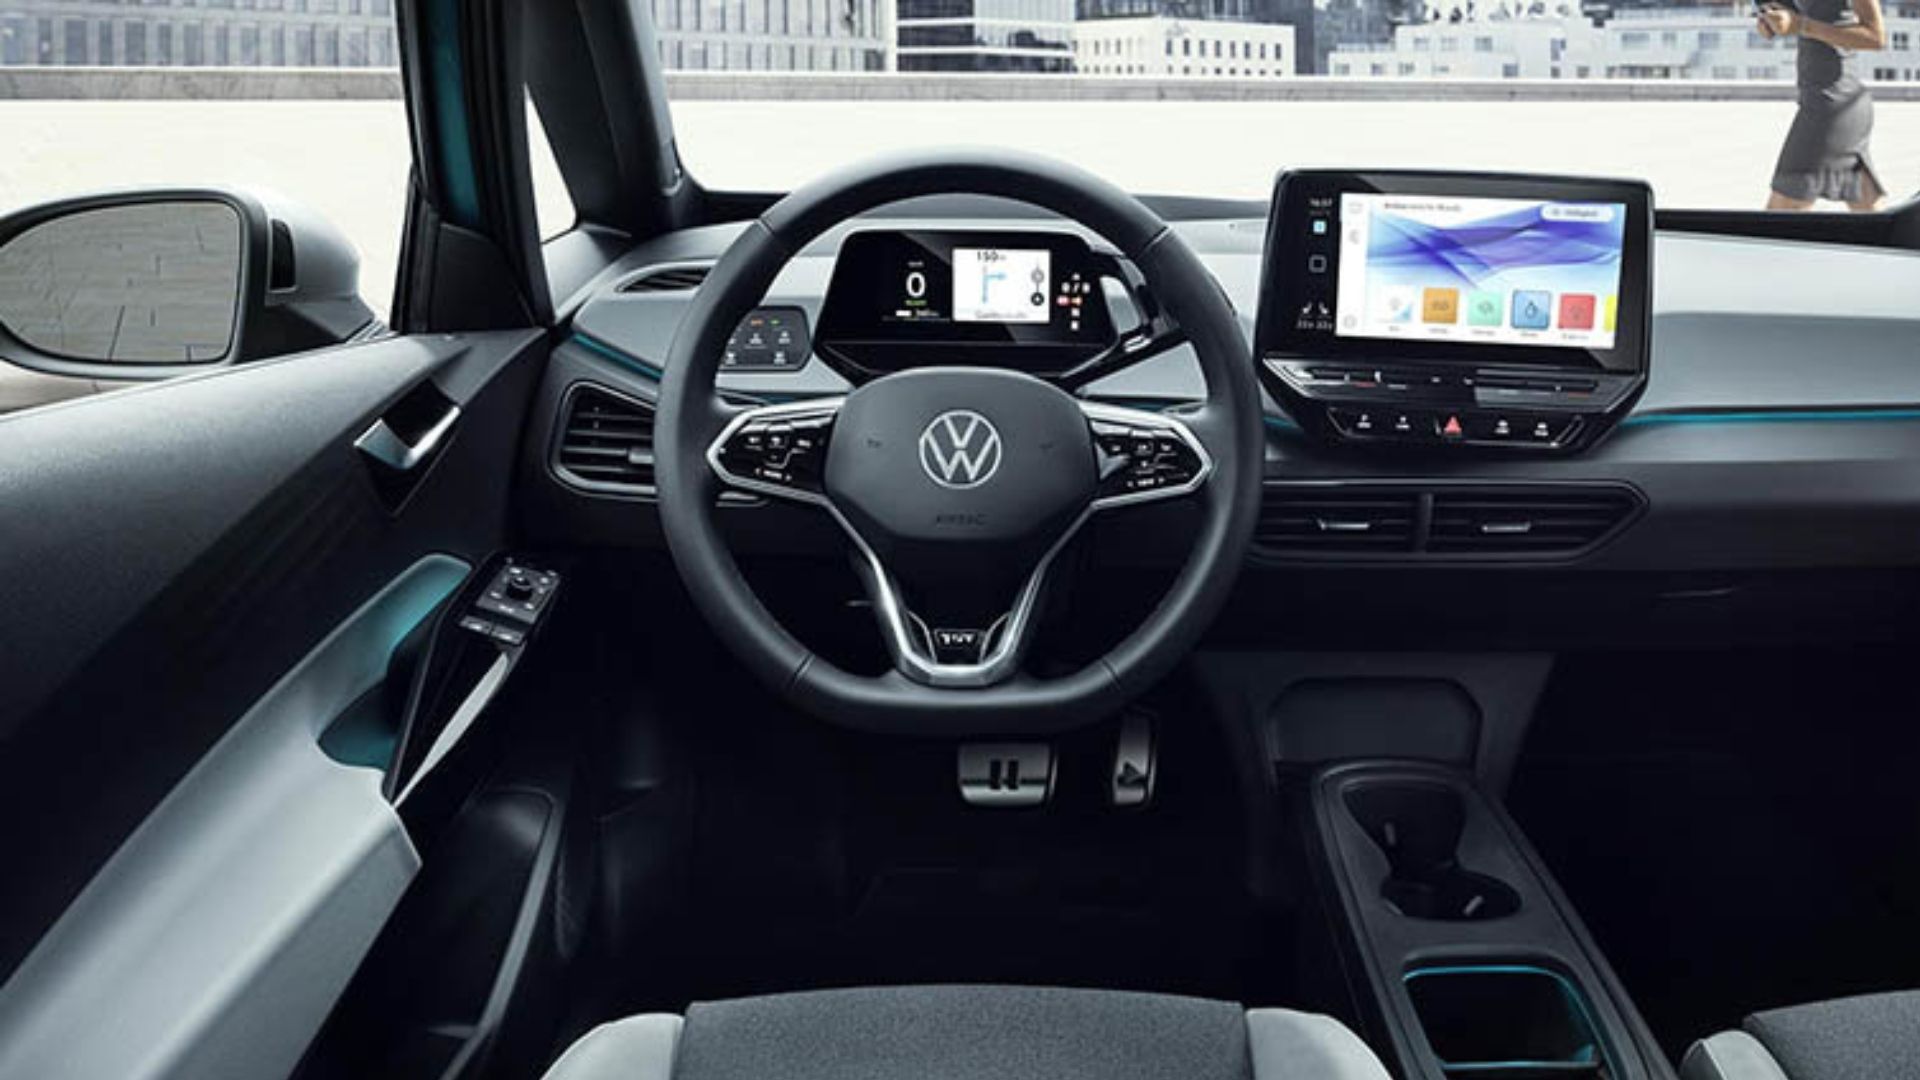 Parabrisas | ¿Cómo luce el nuevo logo de Volkswagen en sus autos?